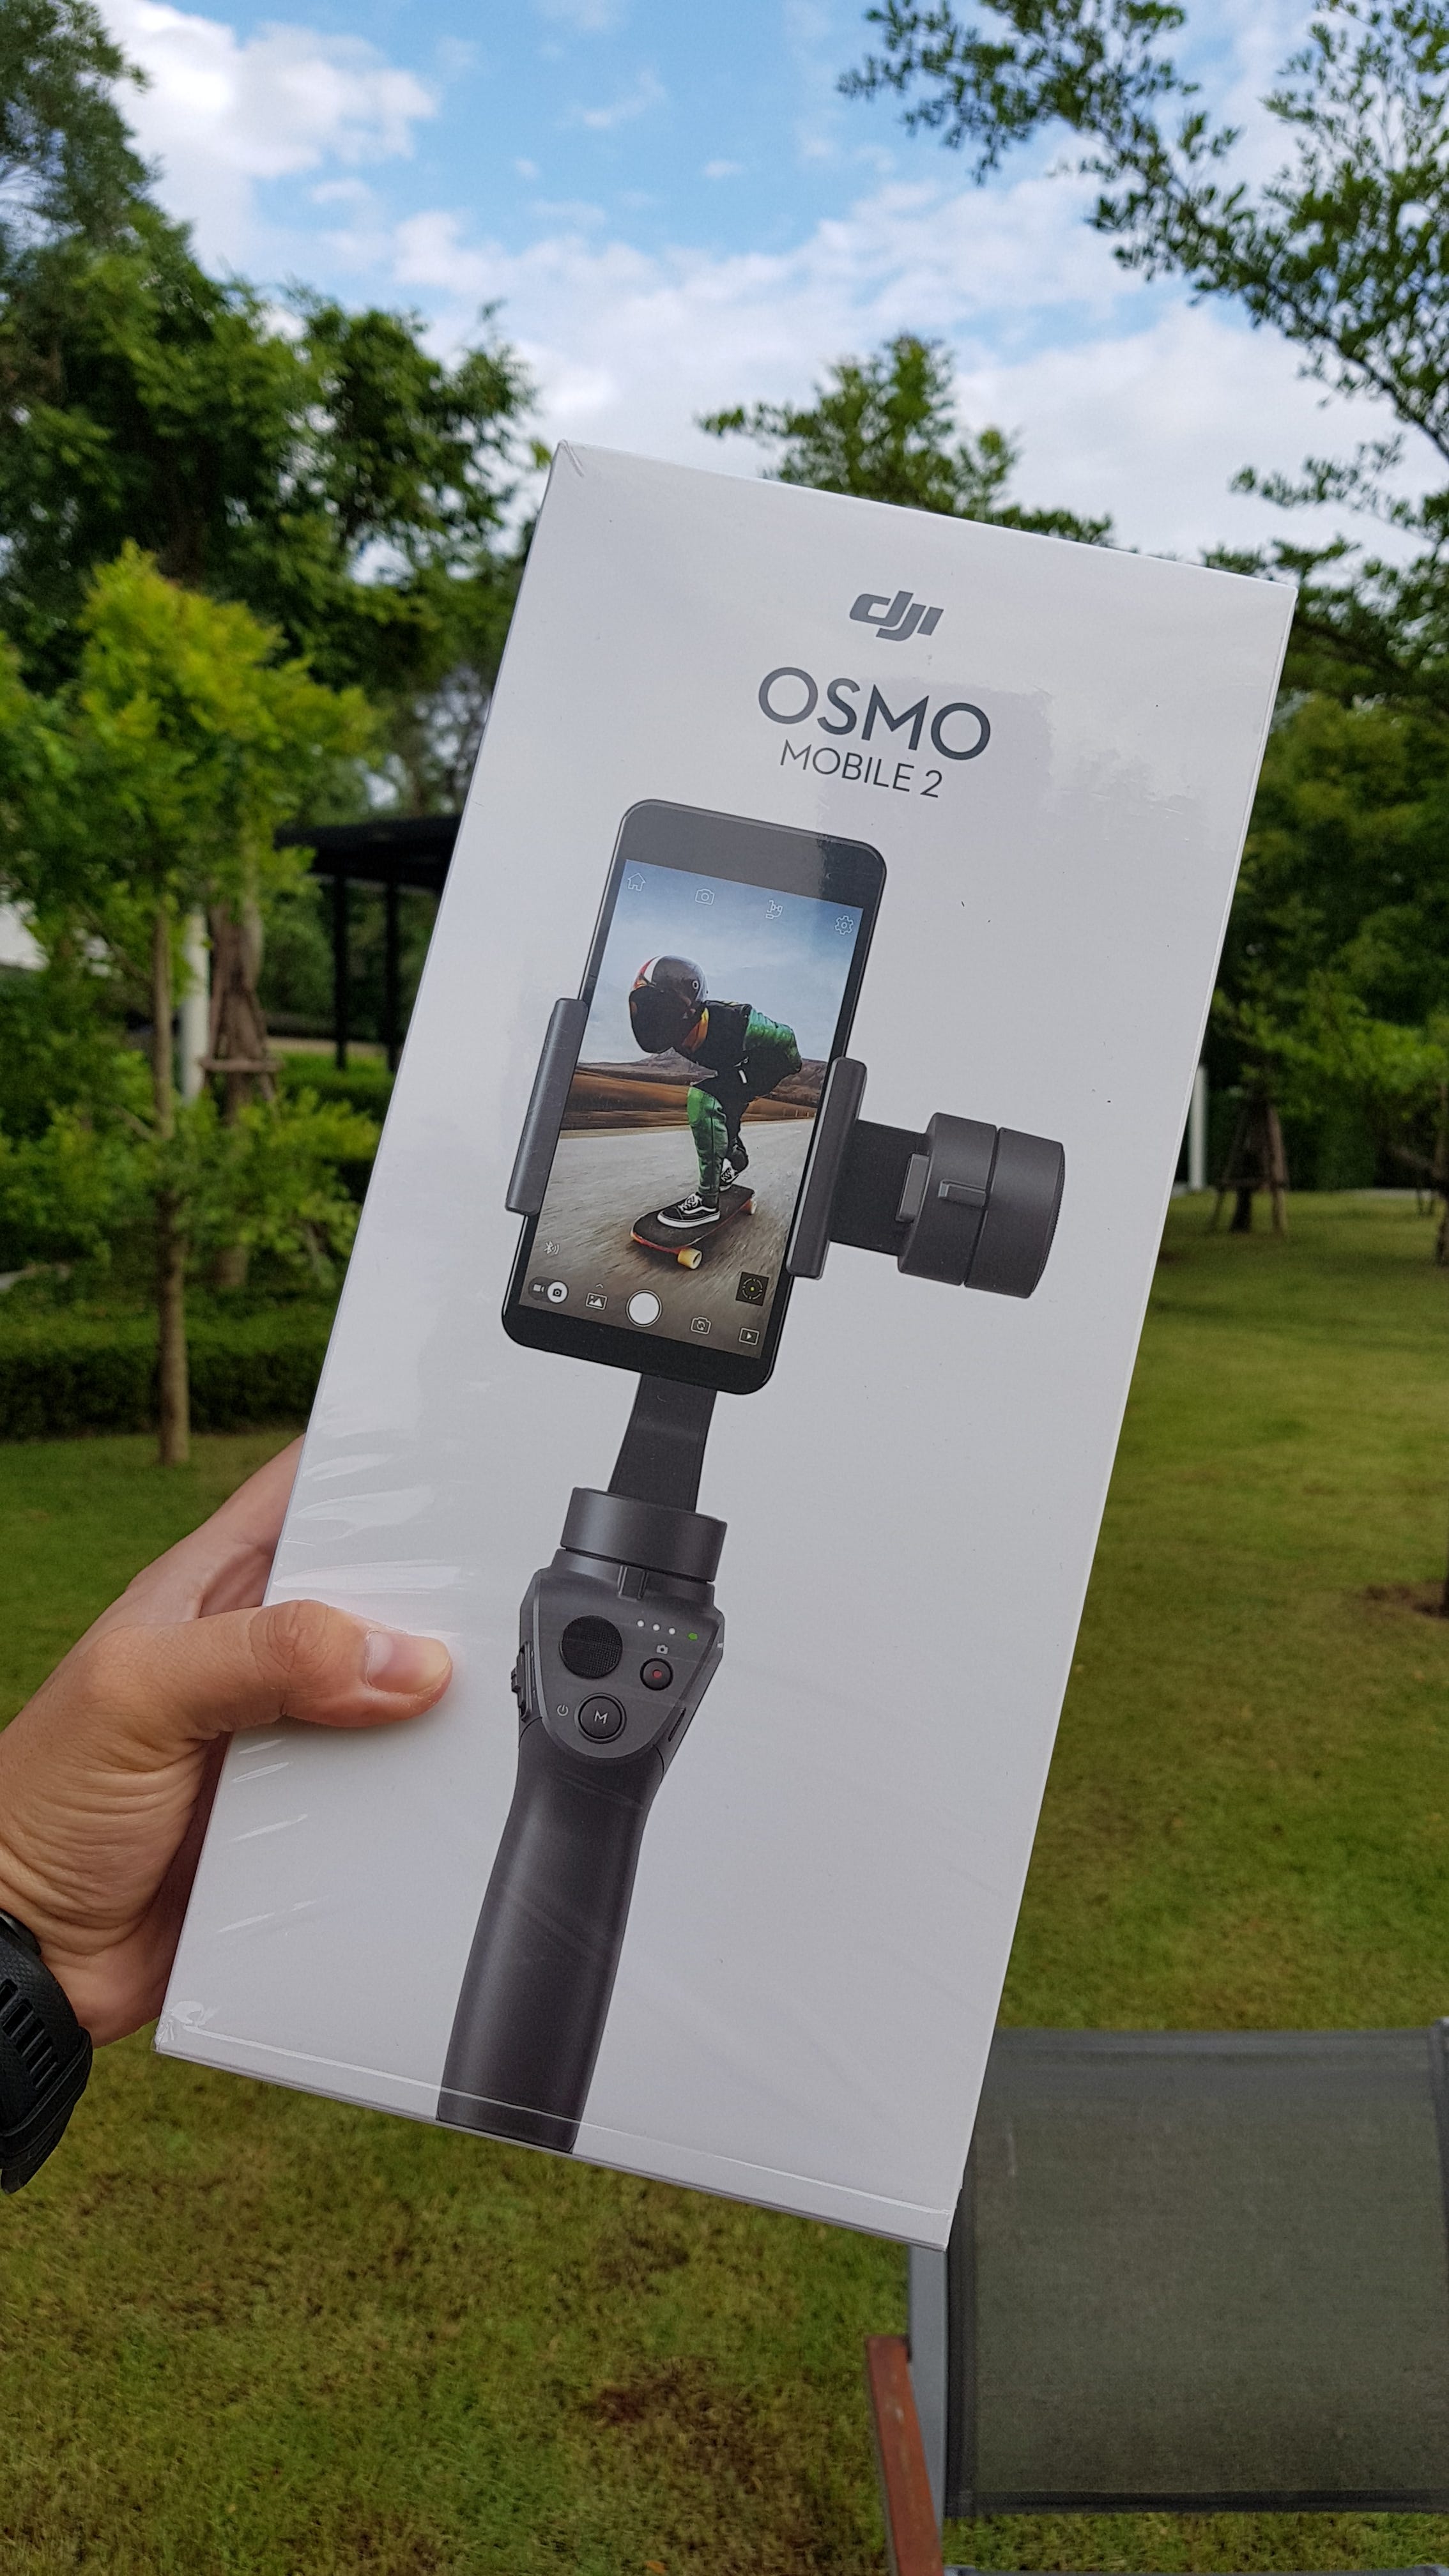 รีวิว DJI Osmo Mobile2 ไม้กันสั่นมือถือสำหรับสายเที่ยว | by Pichaya